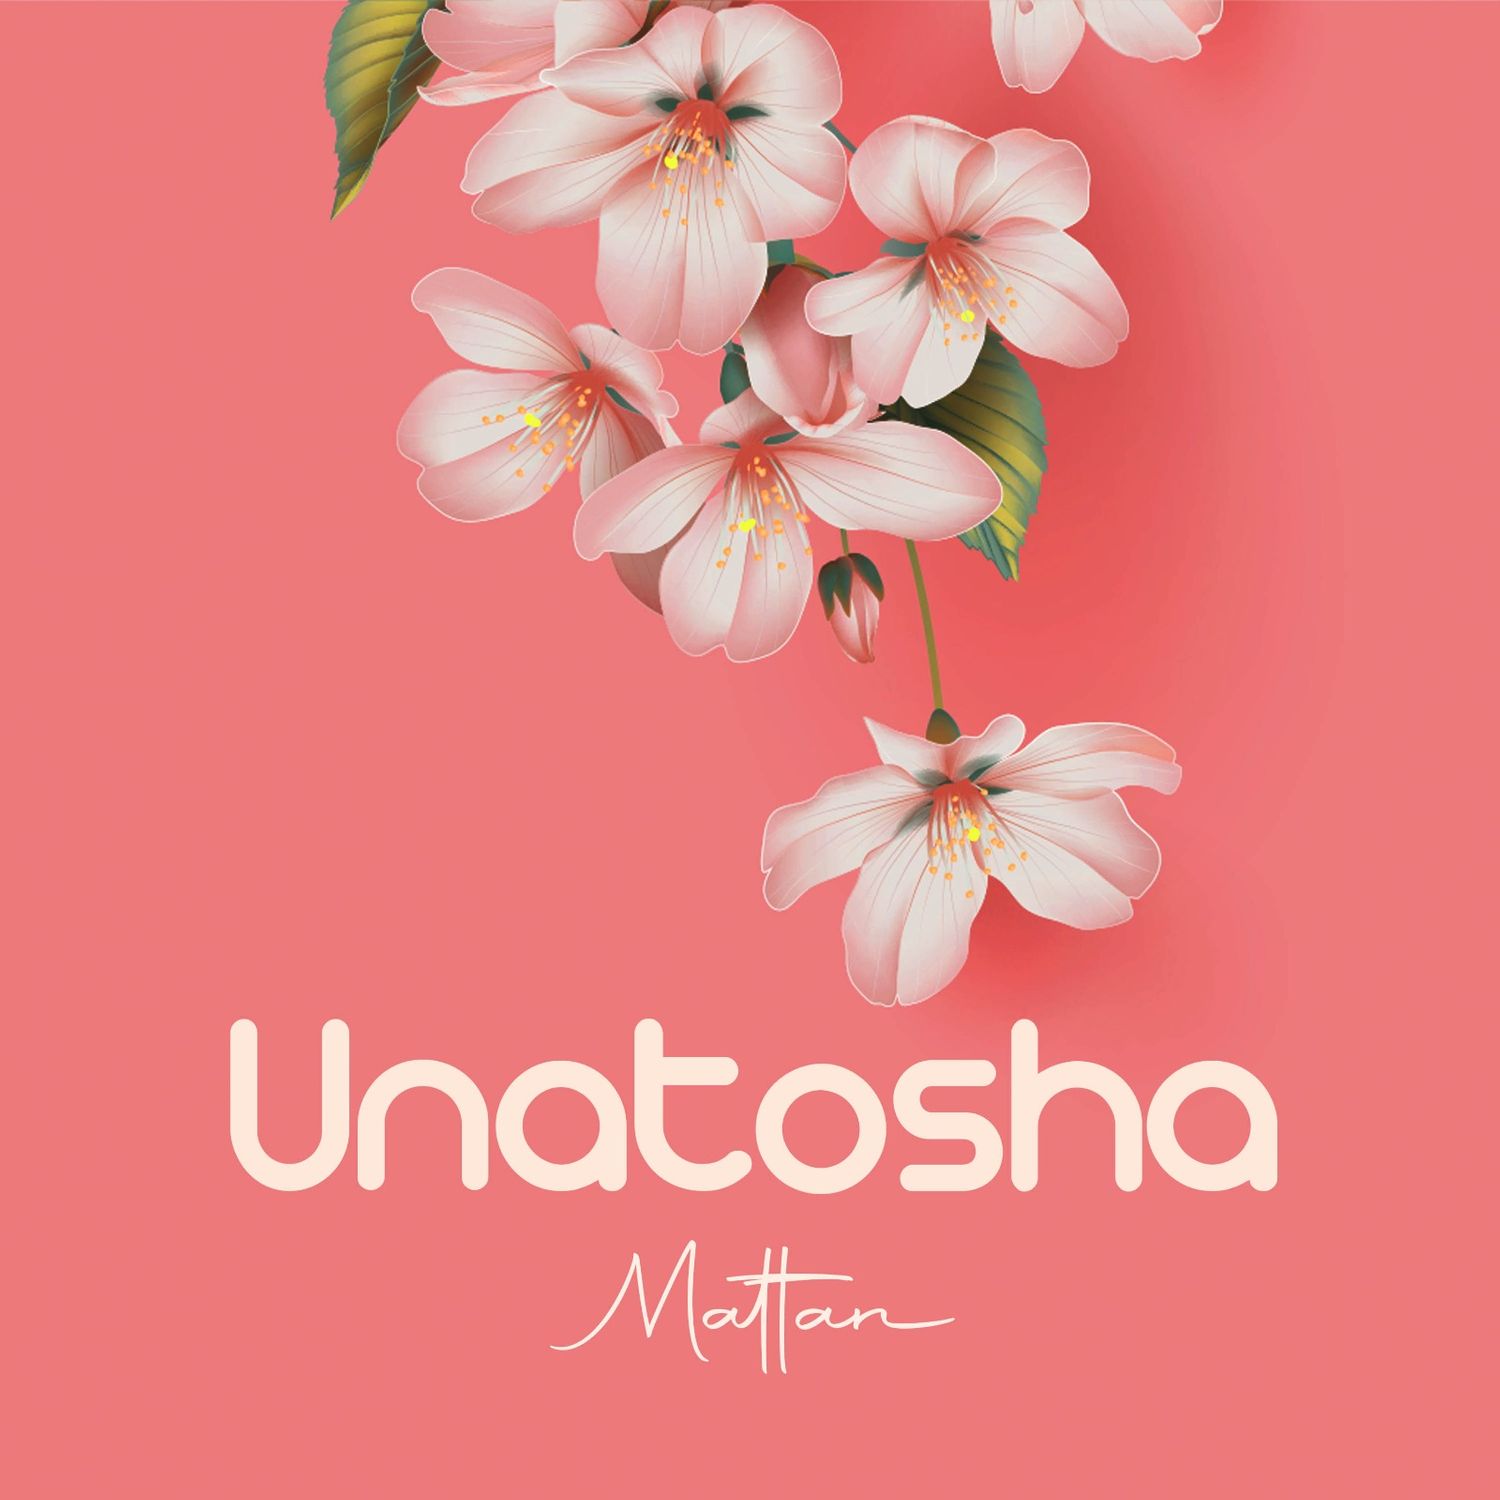 Mattan - Unatosha